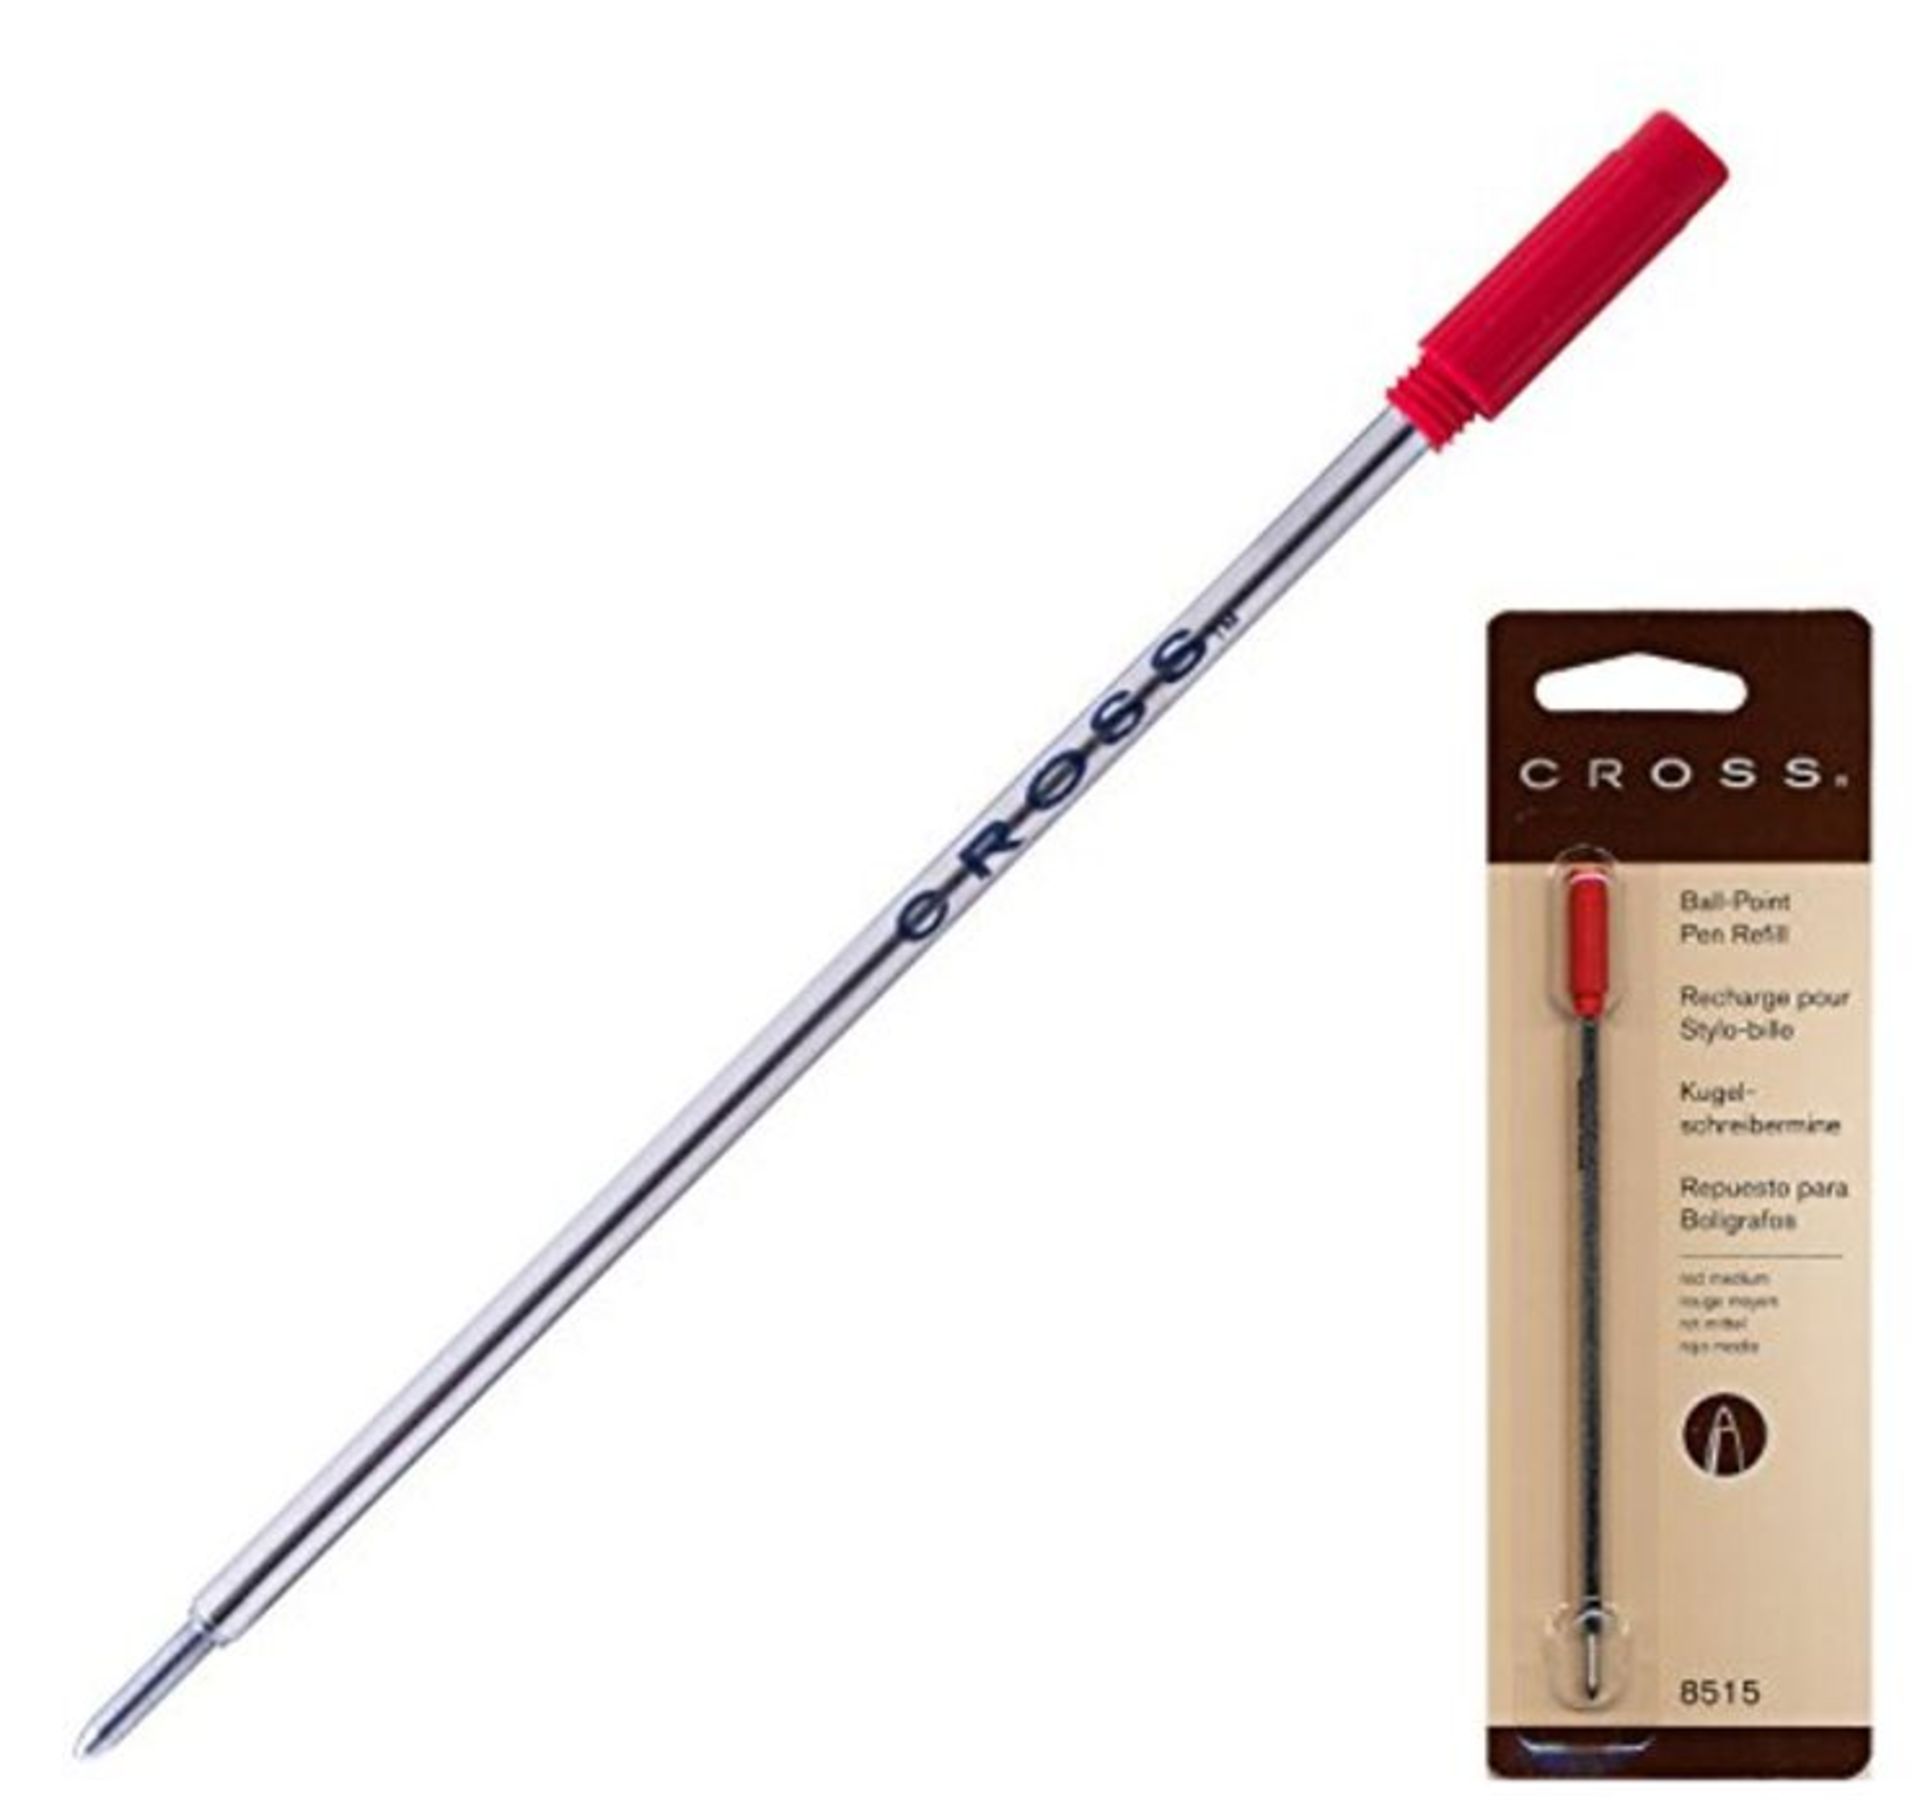 CROSS Ball Pen Refill Standard Medium Red 8515  Original Universal Ballpoint Refill